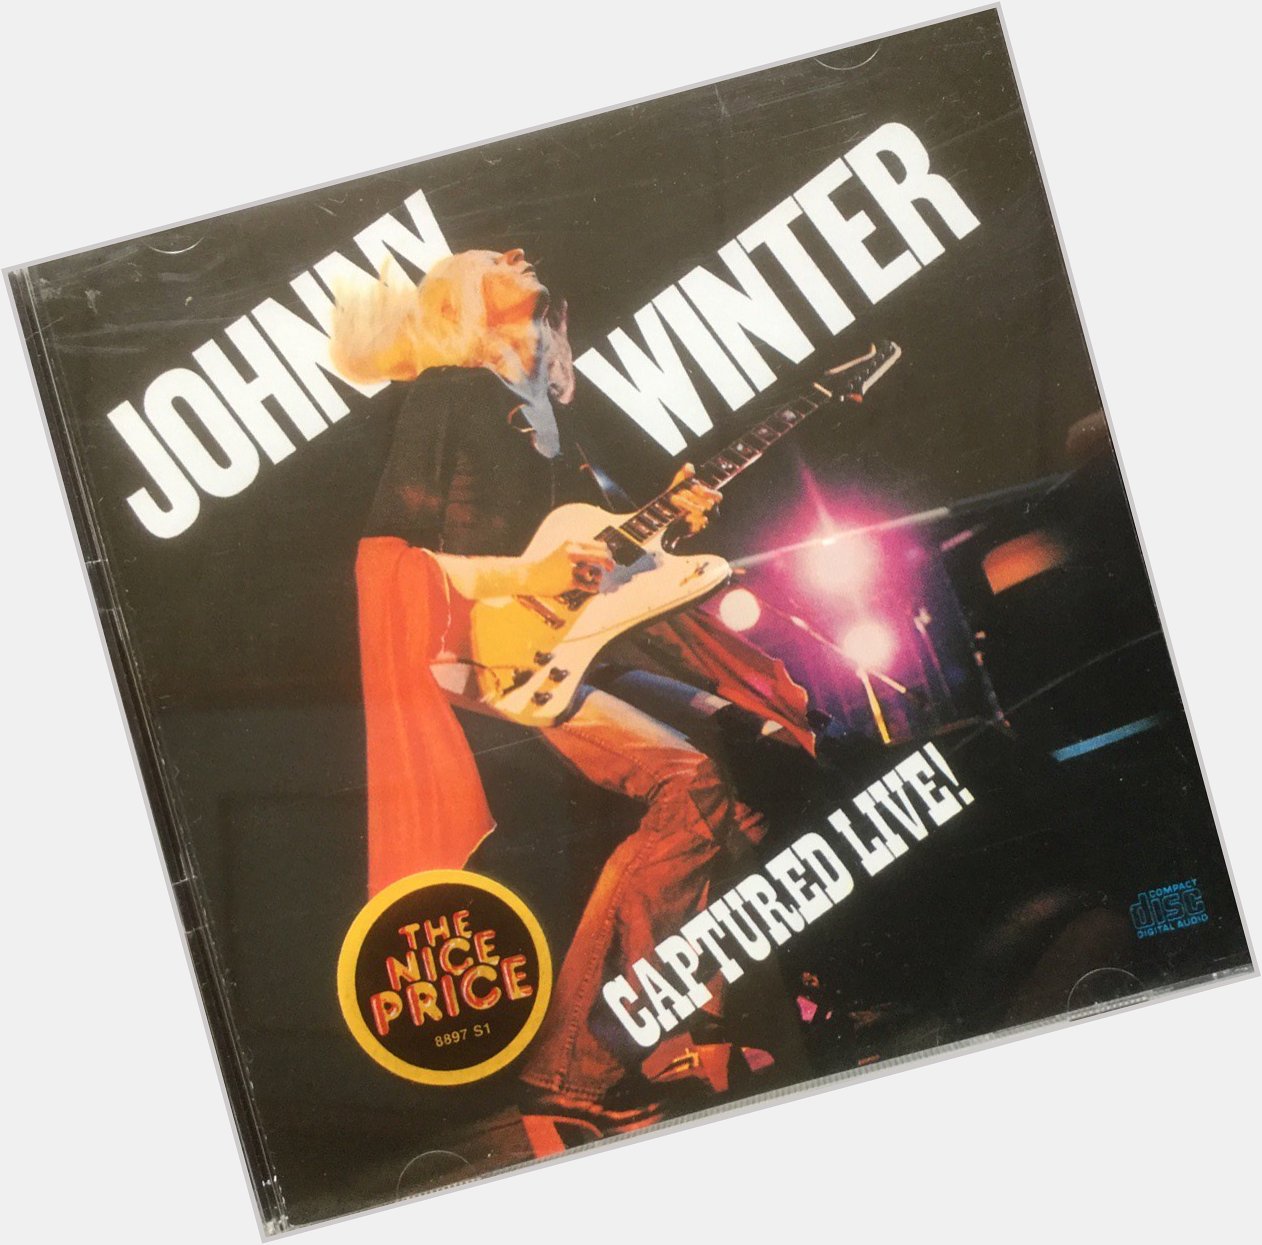   happy birthday. Stewart Copeland
&   &    &    & WILLIAM BELL  .death anniversary. Johnny Winter 